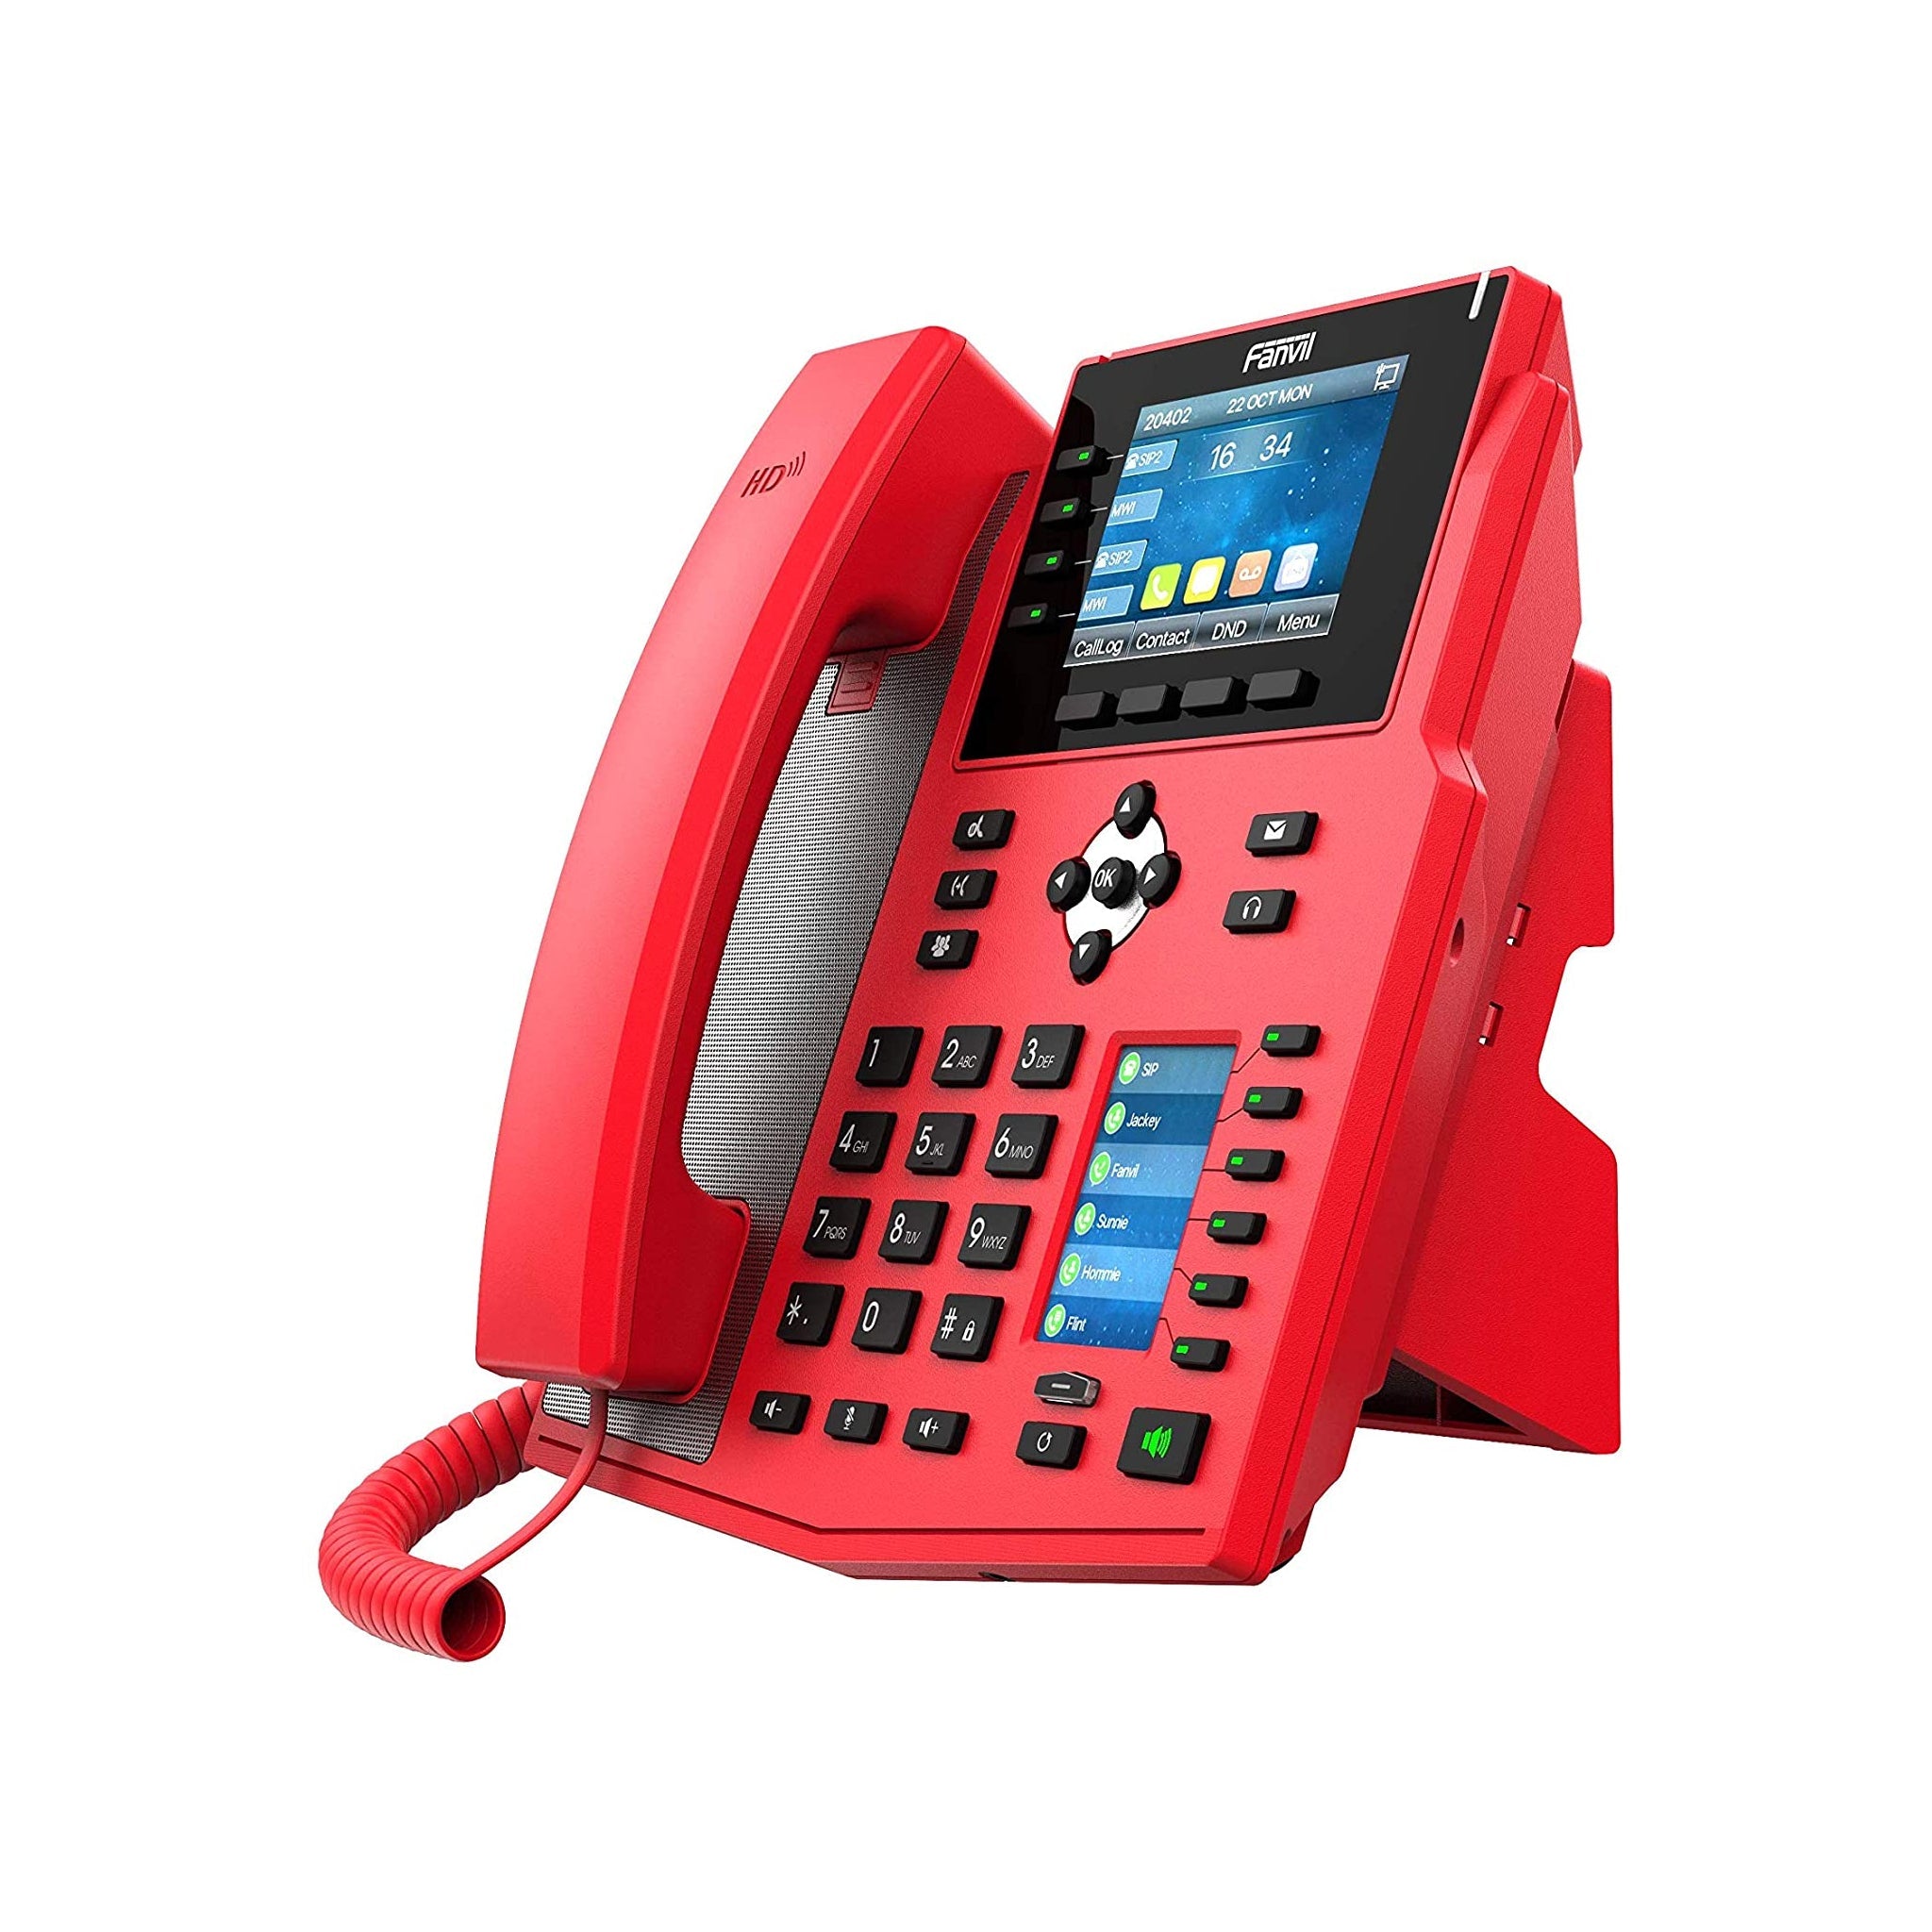 Fanvil X5U-R - Special Red Enterprise IP Phone X5U-R | AL-VoIP Store